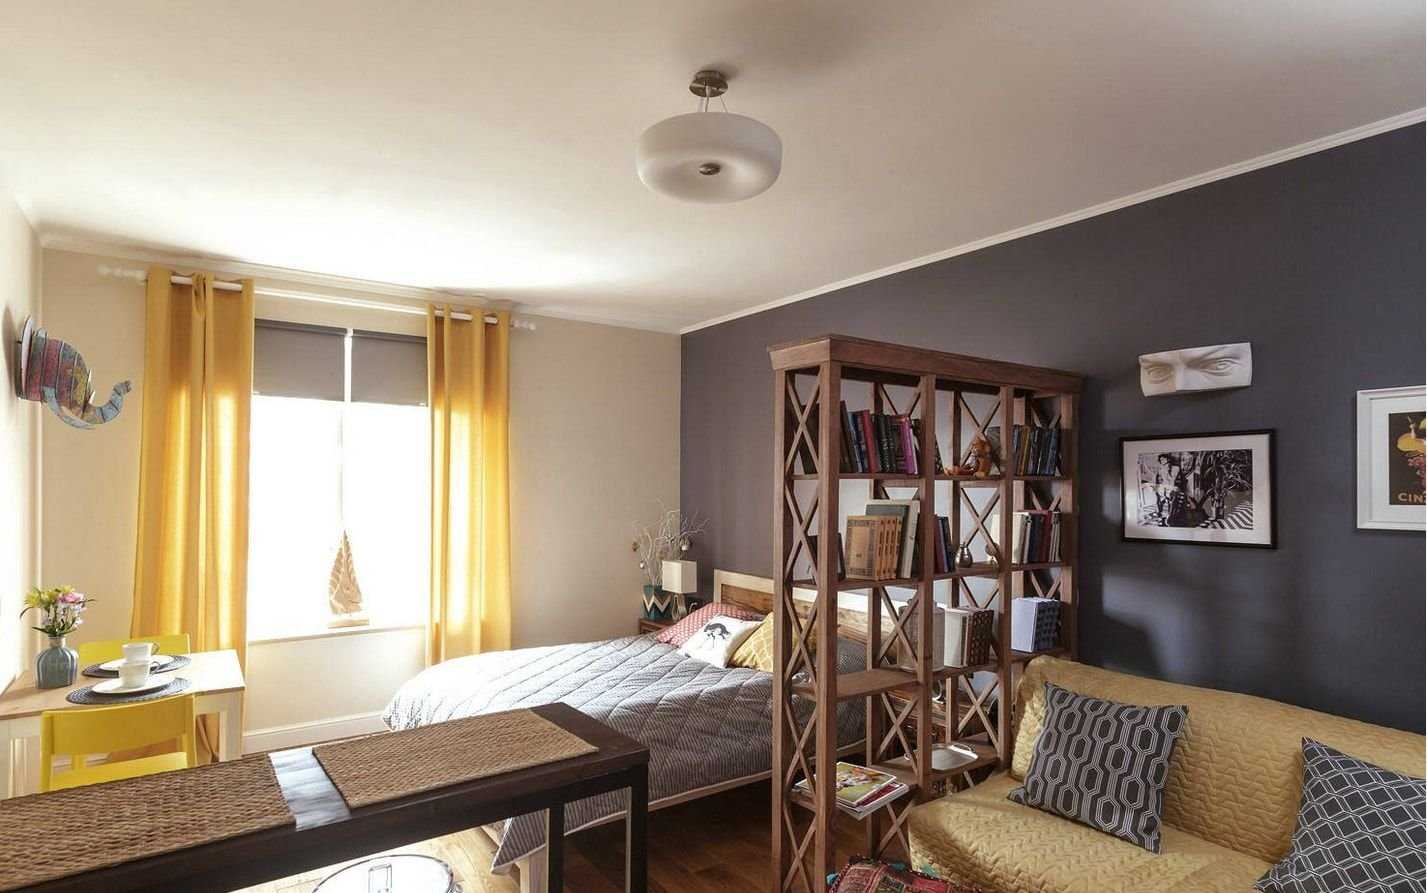 Зонирование комнаты на спальню и гостиную: как разделить на две зоны .